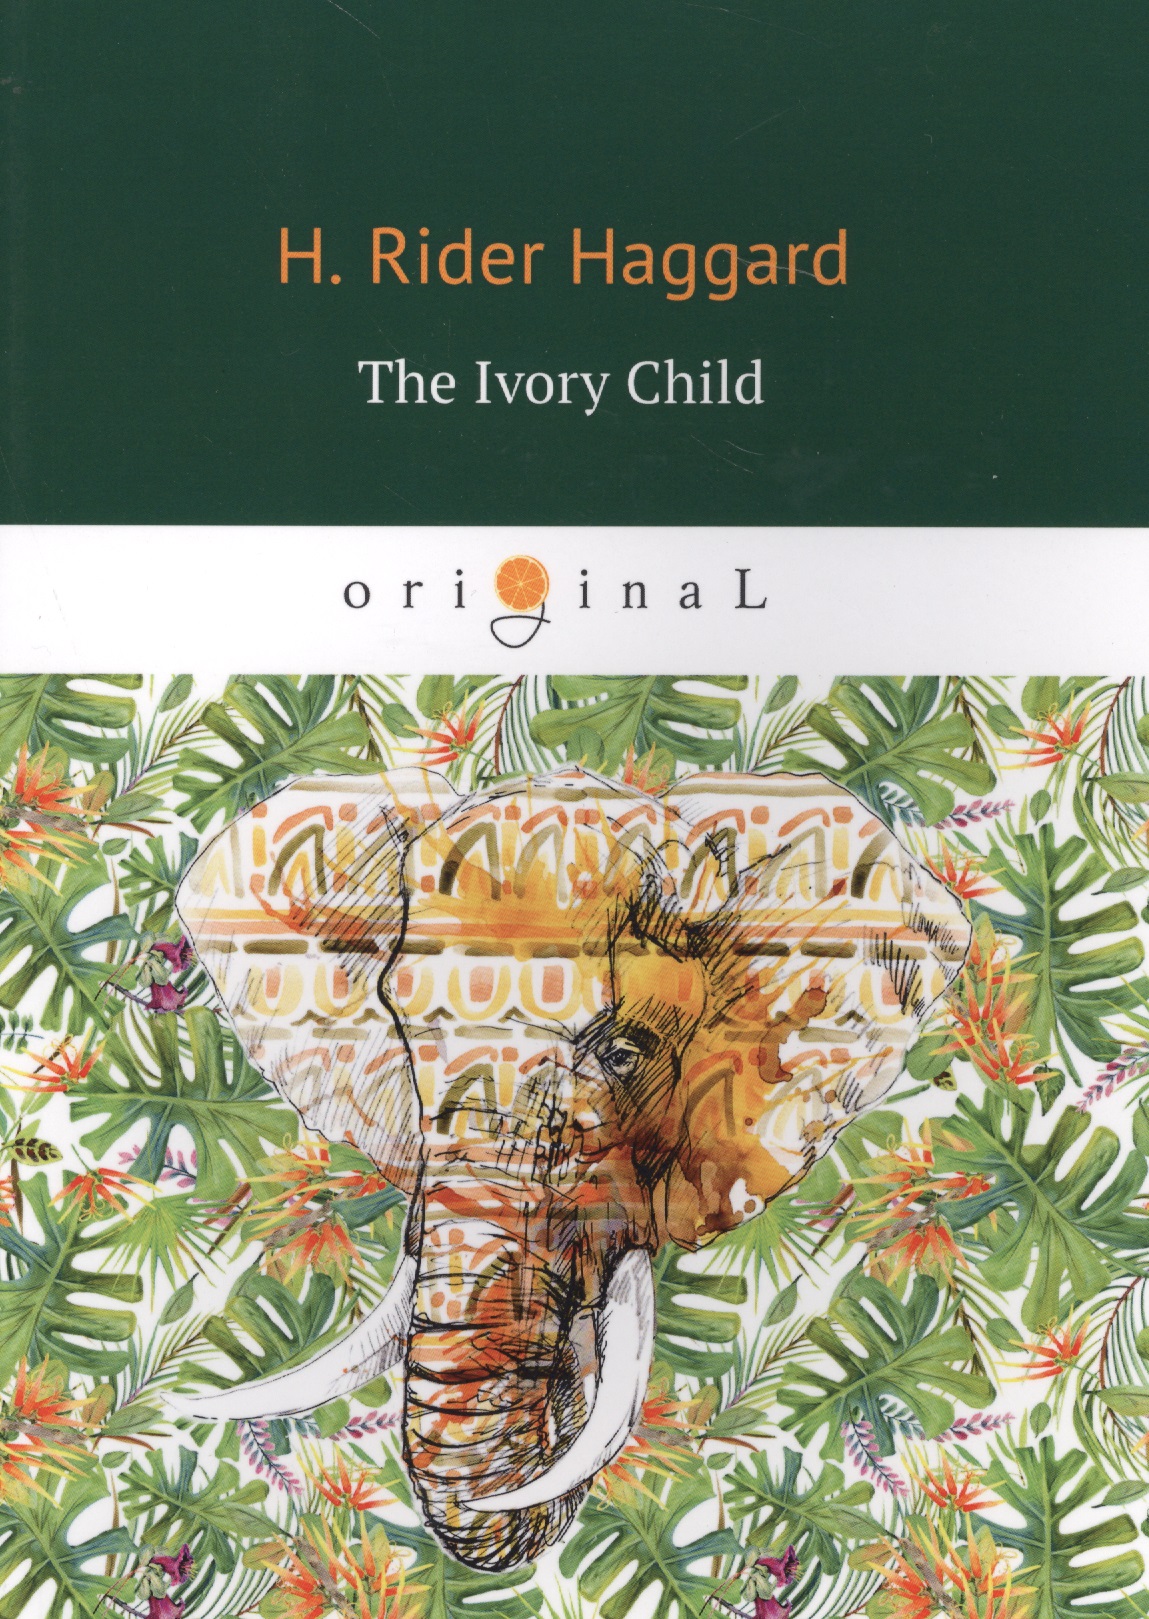 Хаггард Генри Райдер The Ivory Child = Дитя слоновой кости: на английском языке хаггард генри райдер lysbeth лейденская красавица на английском языке